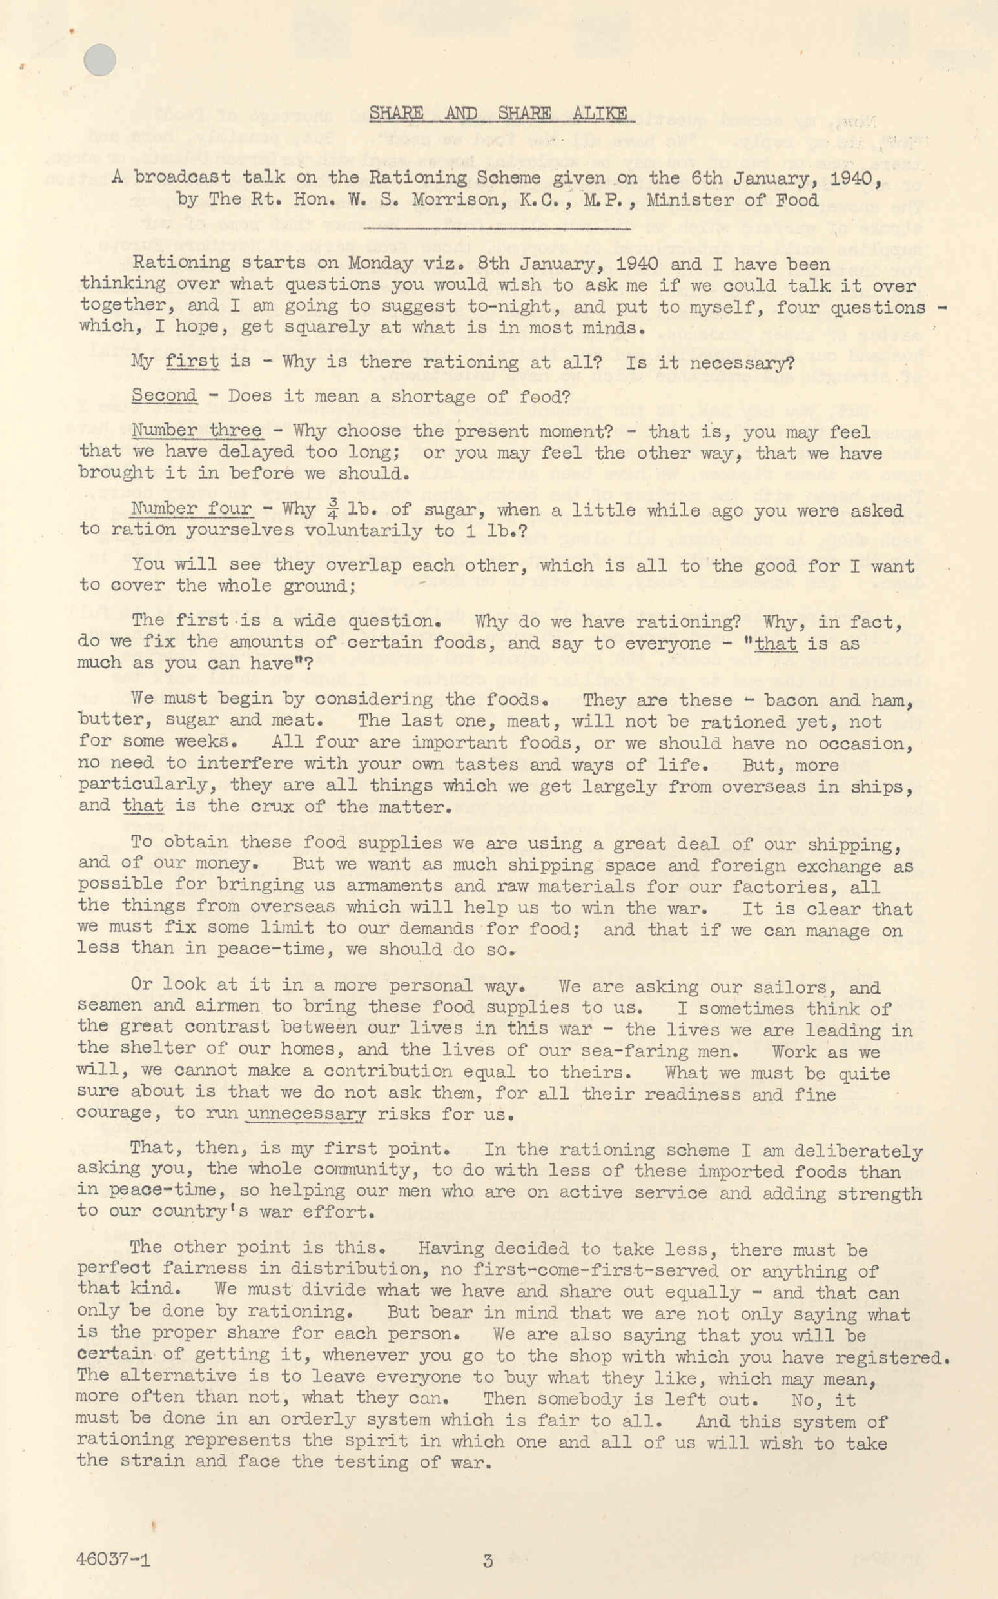 'Share and Share Alike', January 1940